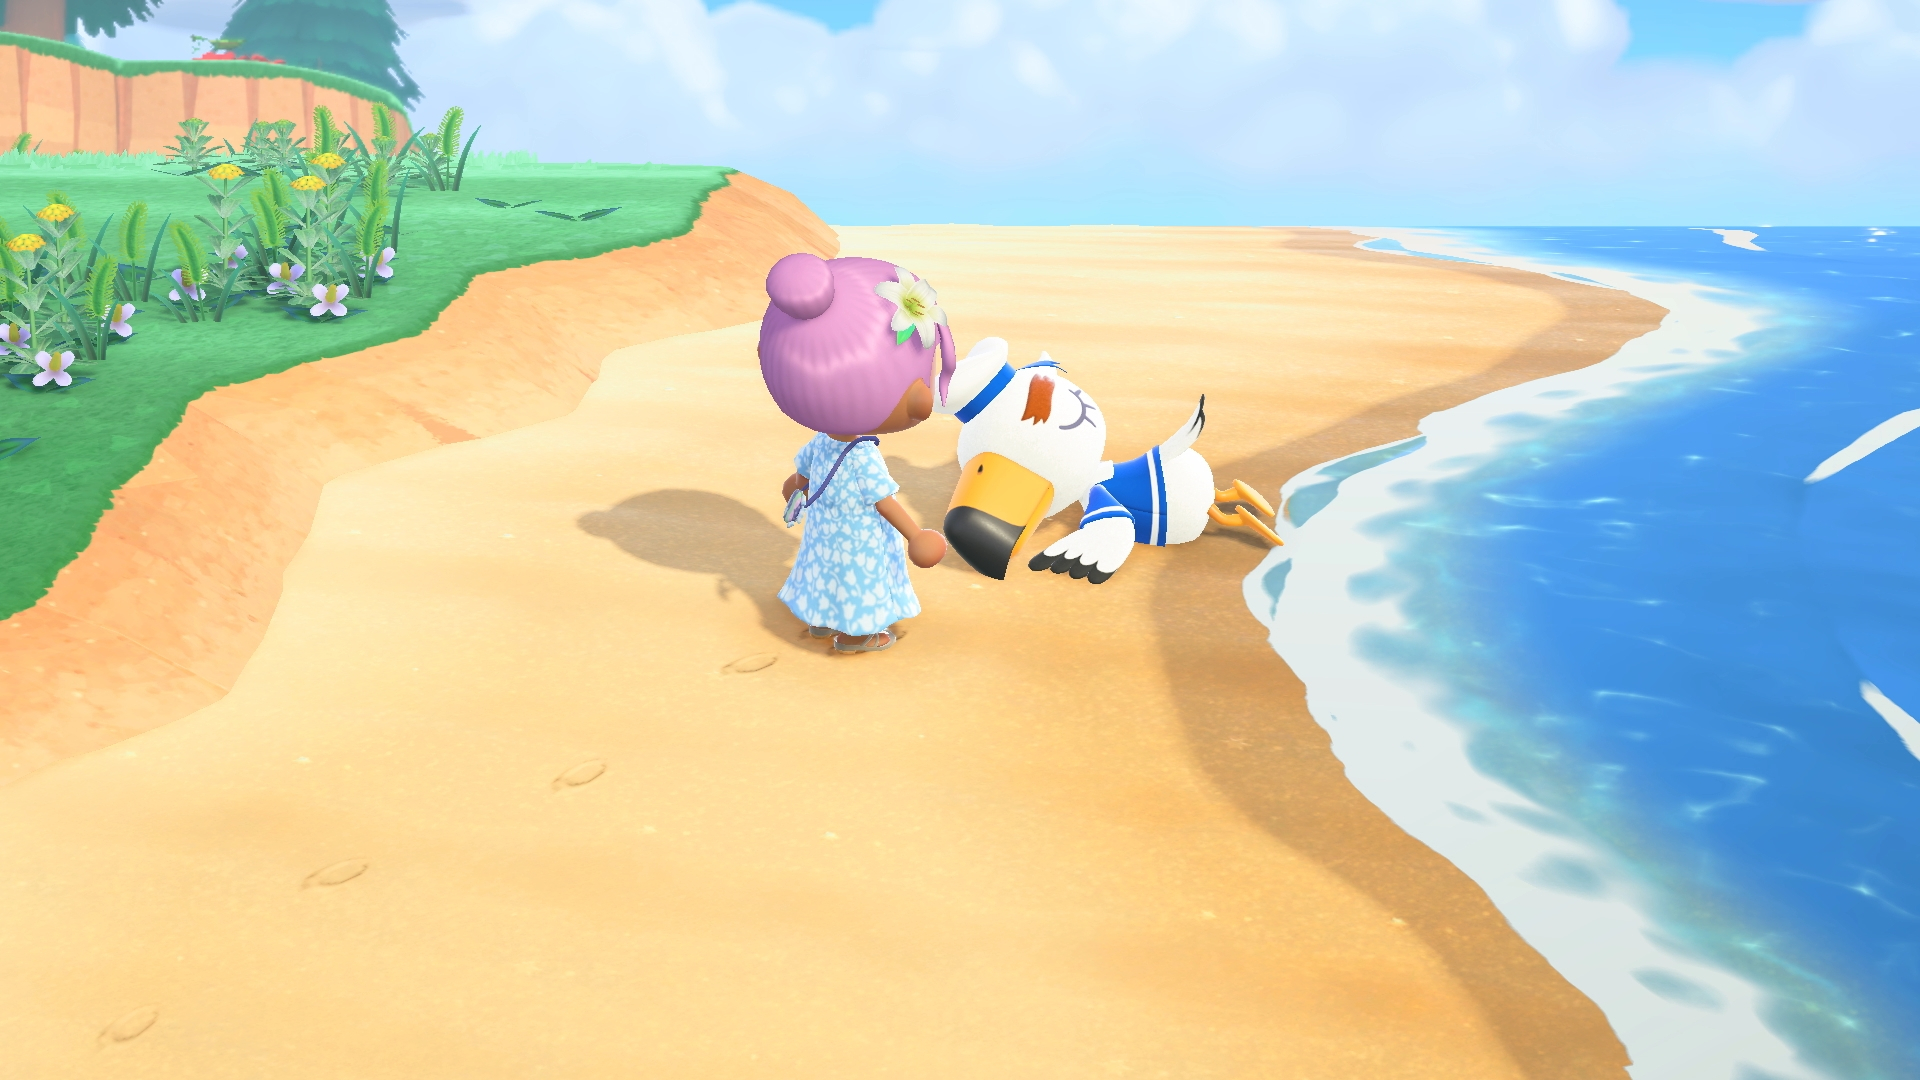 Скриншот из игры Animal Crossing: New Horizons под номером 19